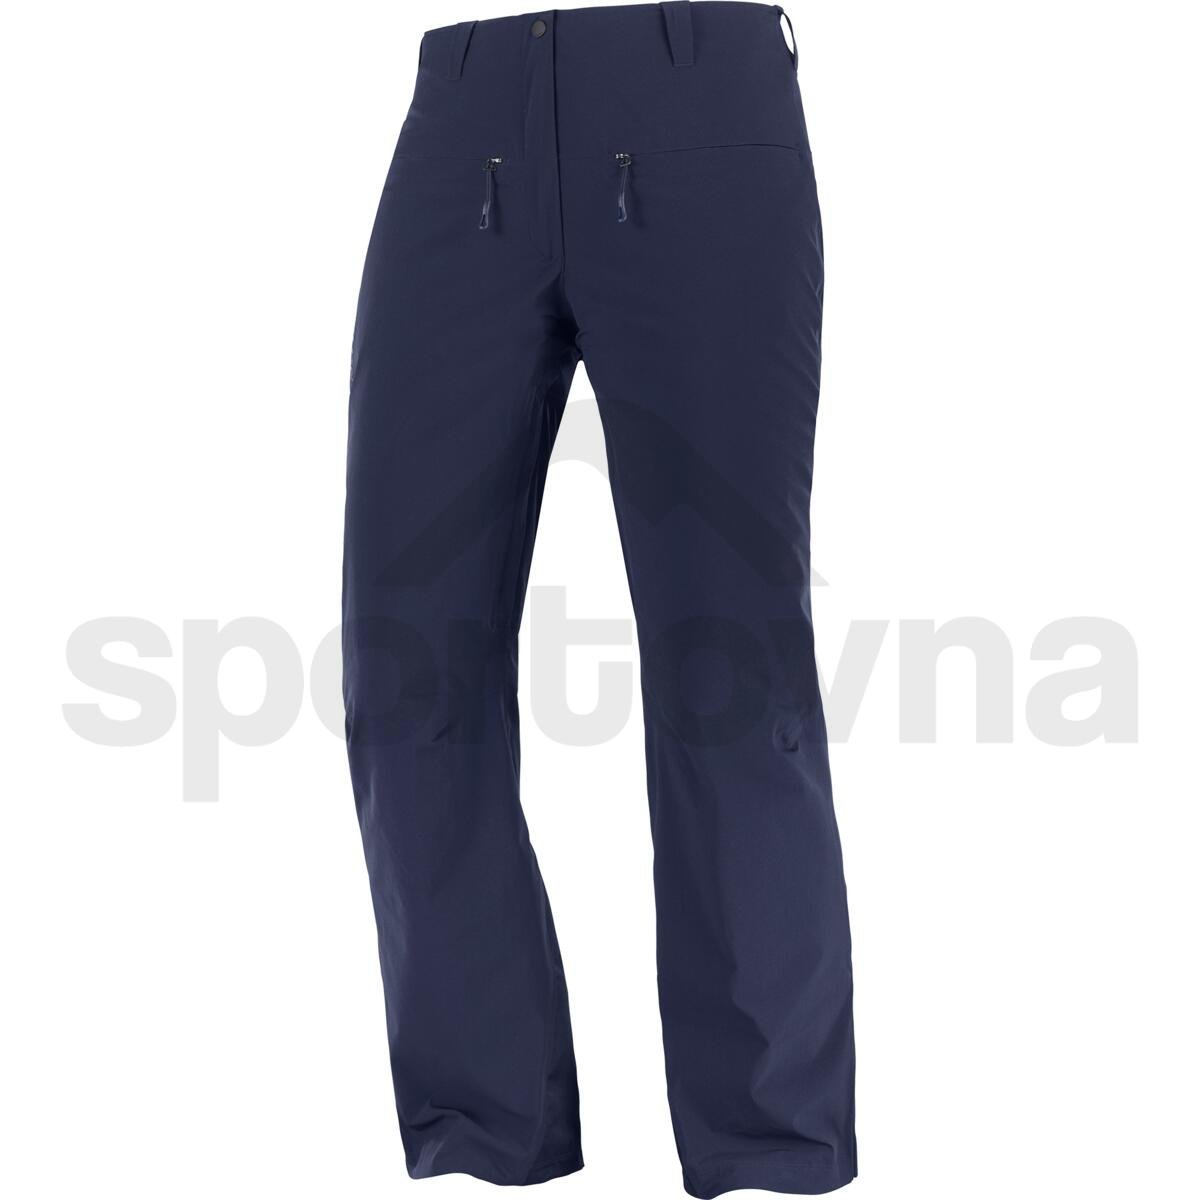 Kalhoty Salomon Brilliant Pants W (zkrácená délka) - tmavě modrá